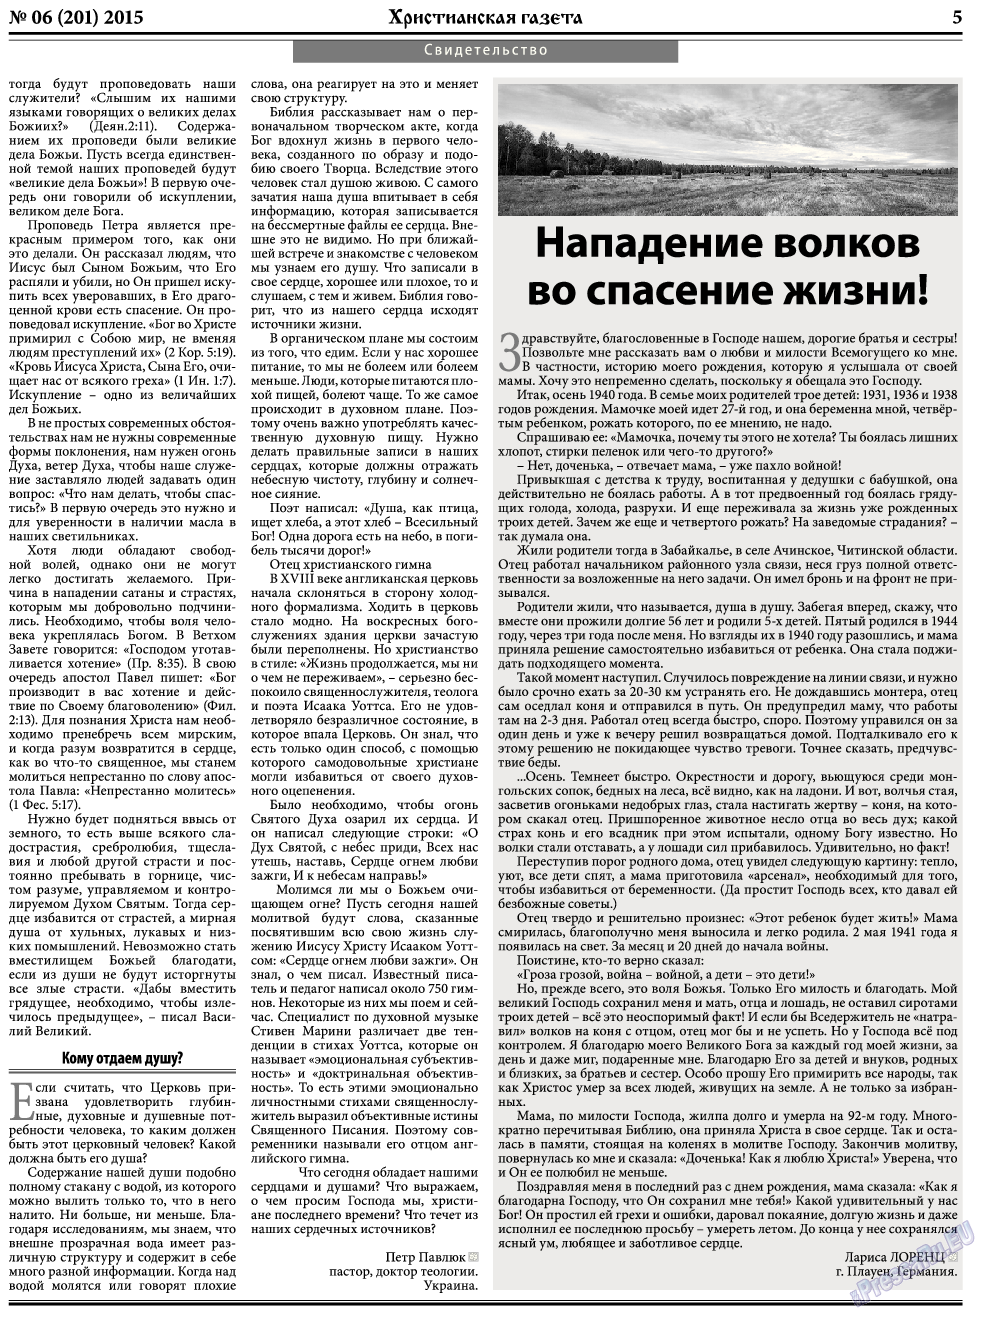 Христианская газета, газета. 2015 №6 стр.5